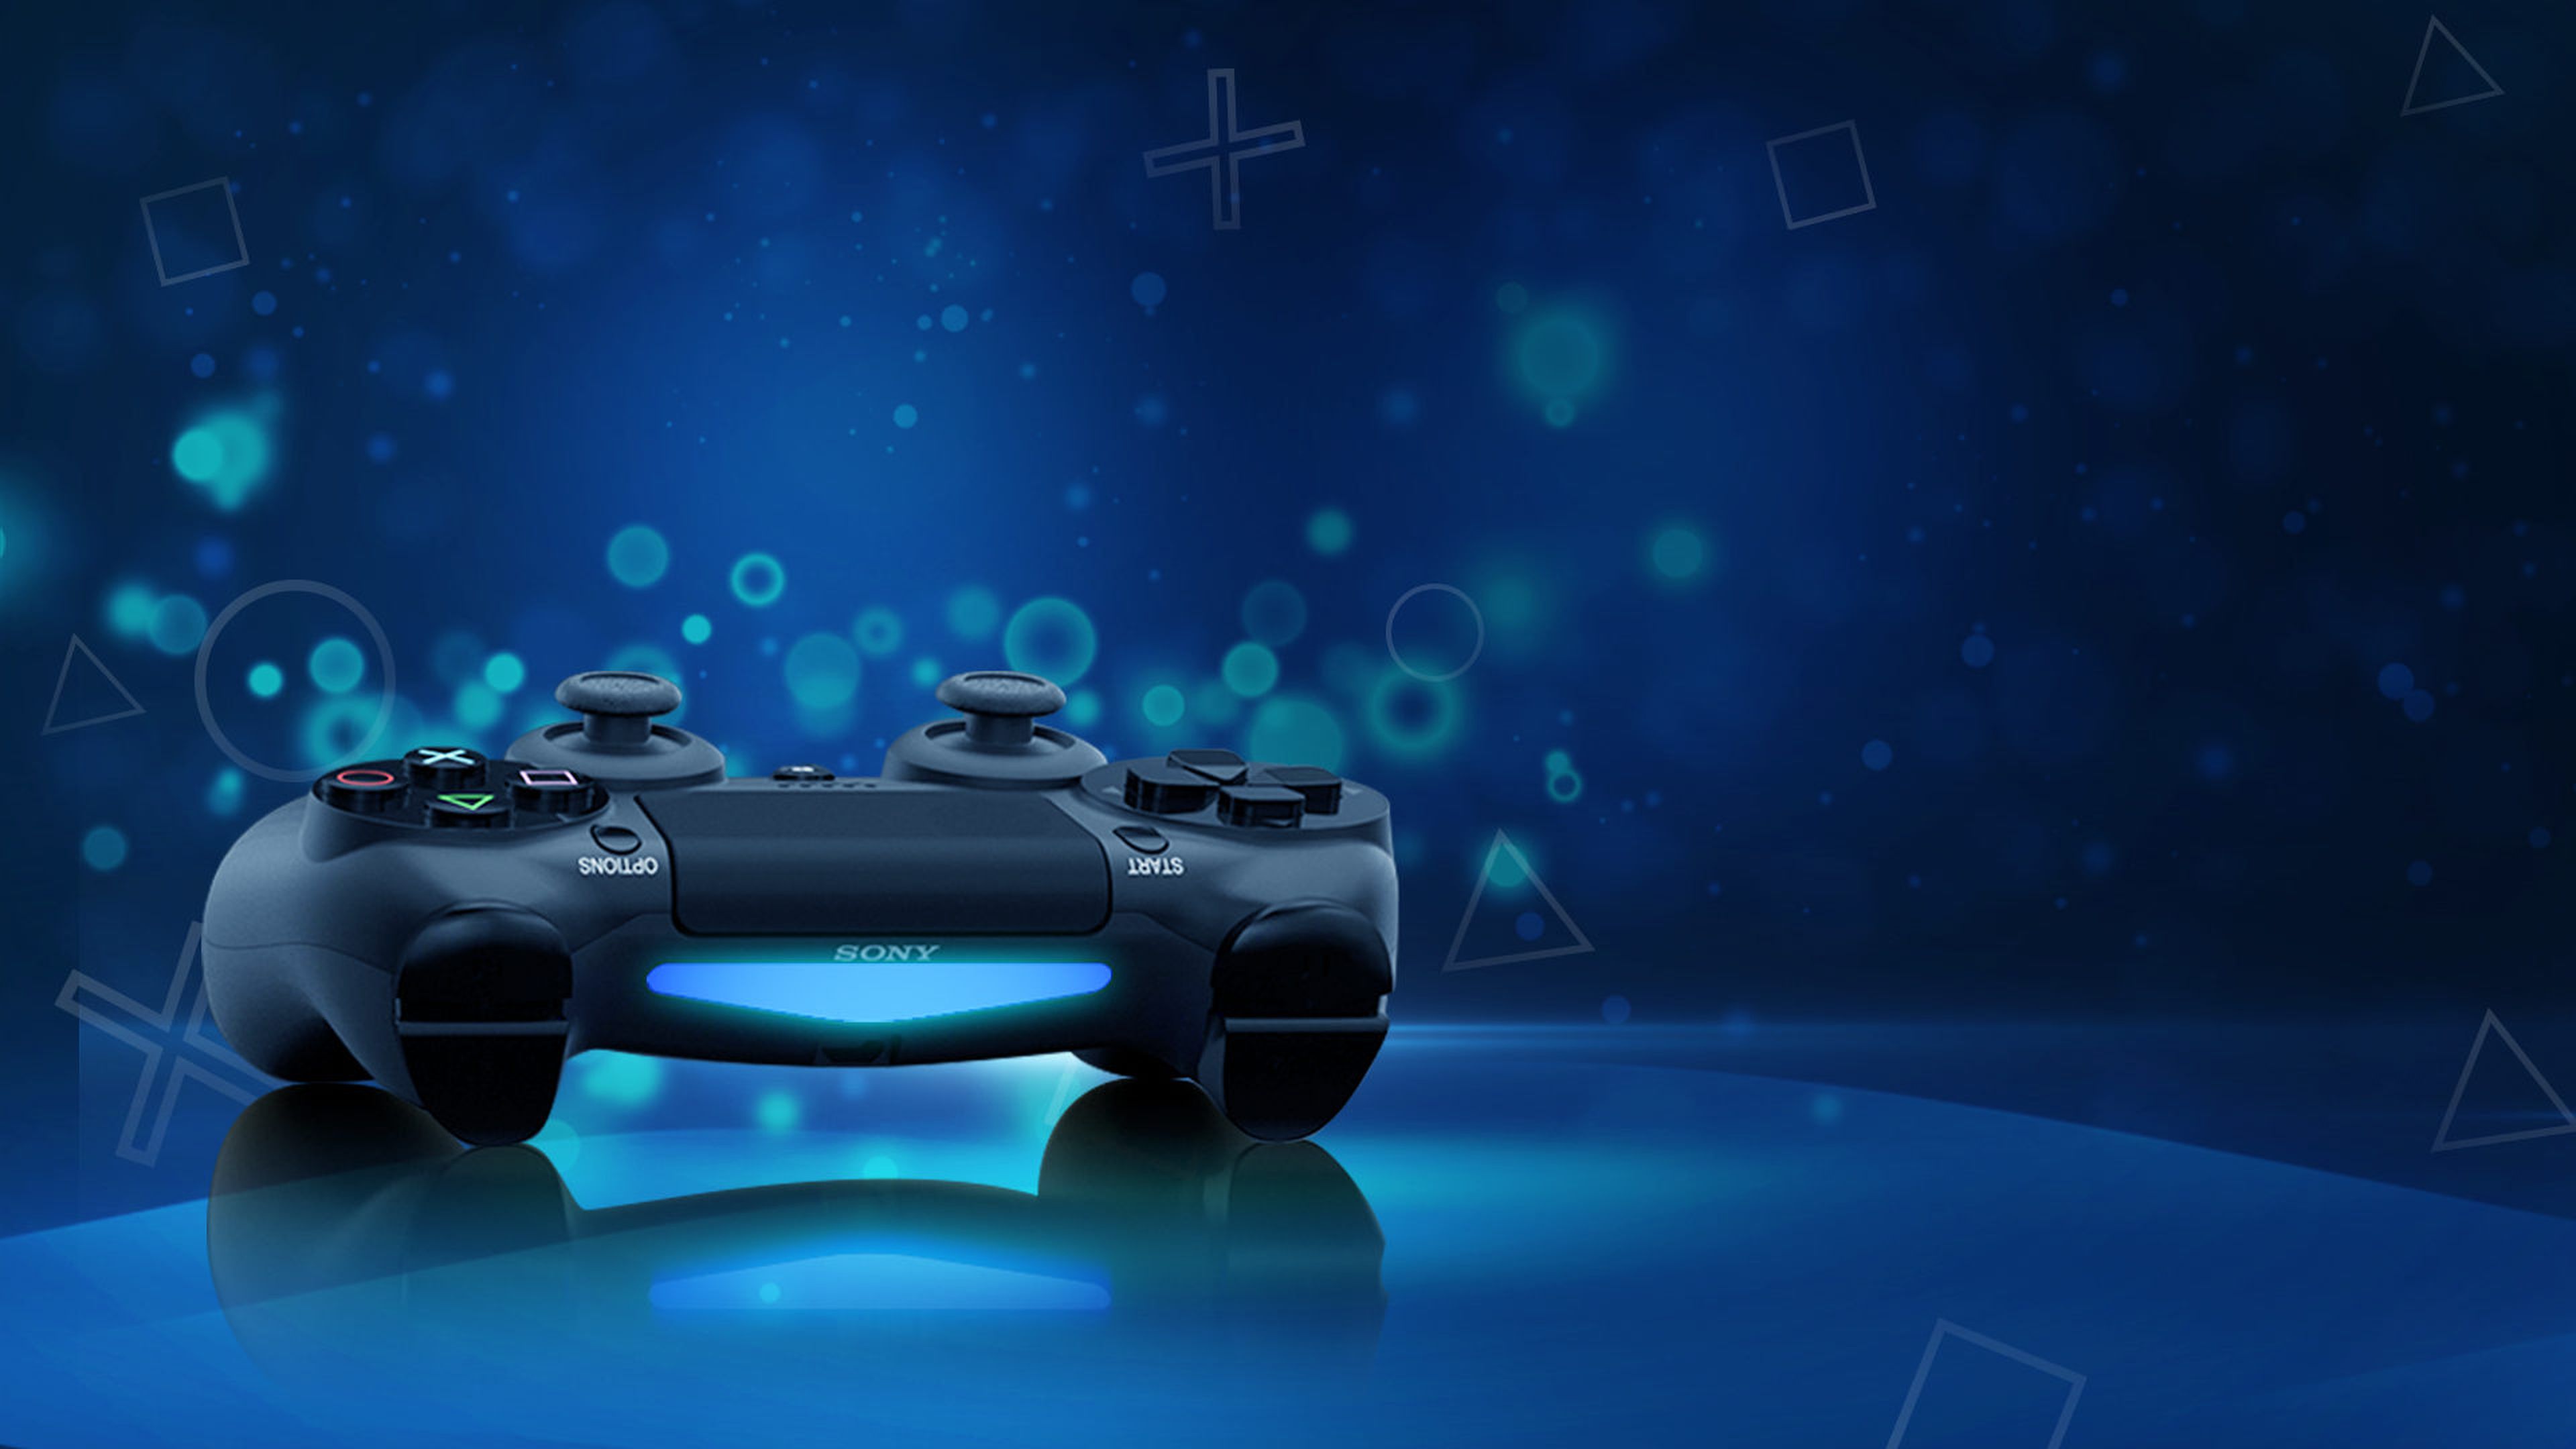 El mando de PlayStation 4 ampliará sus posibilidades mediante un accesorio